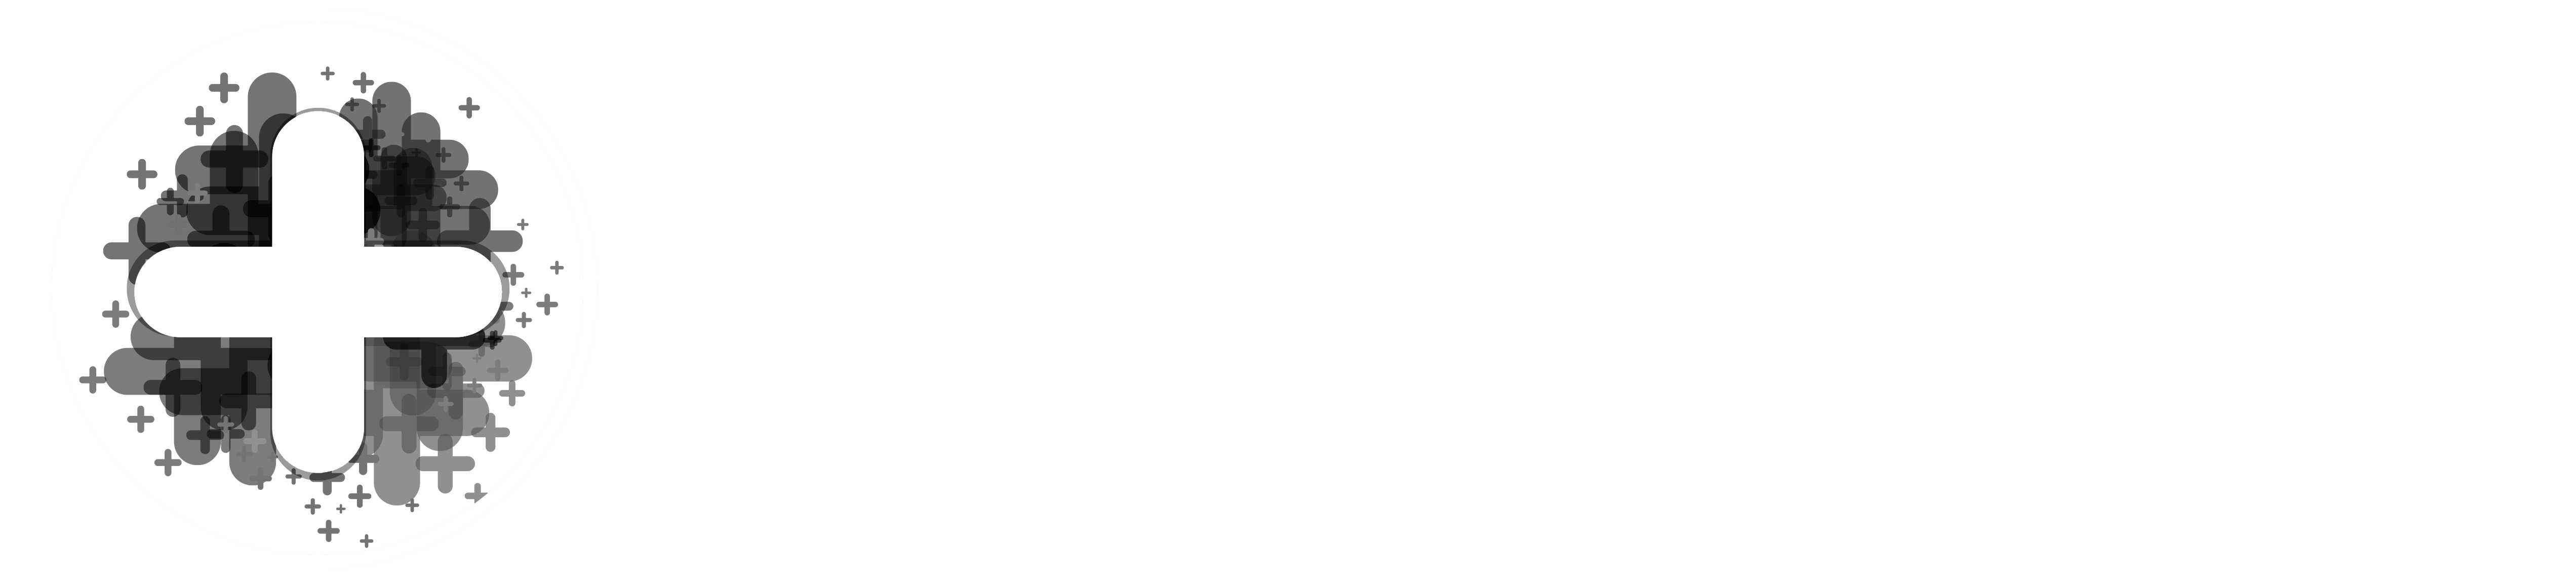 Masclic.com